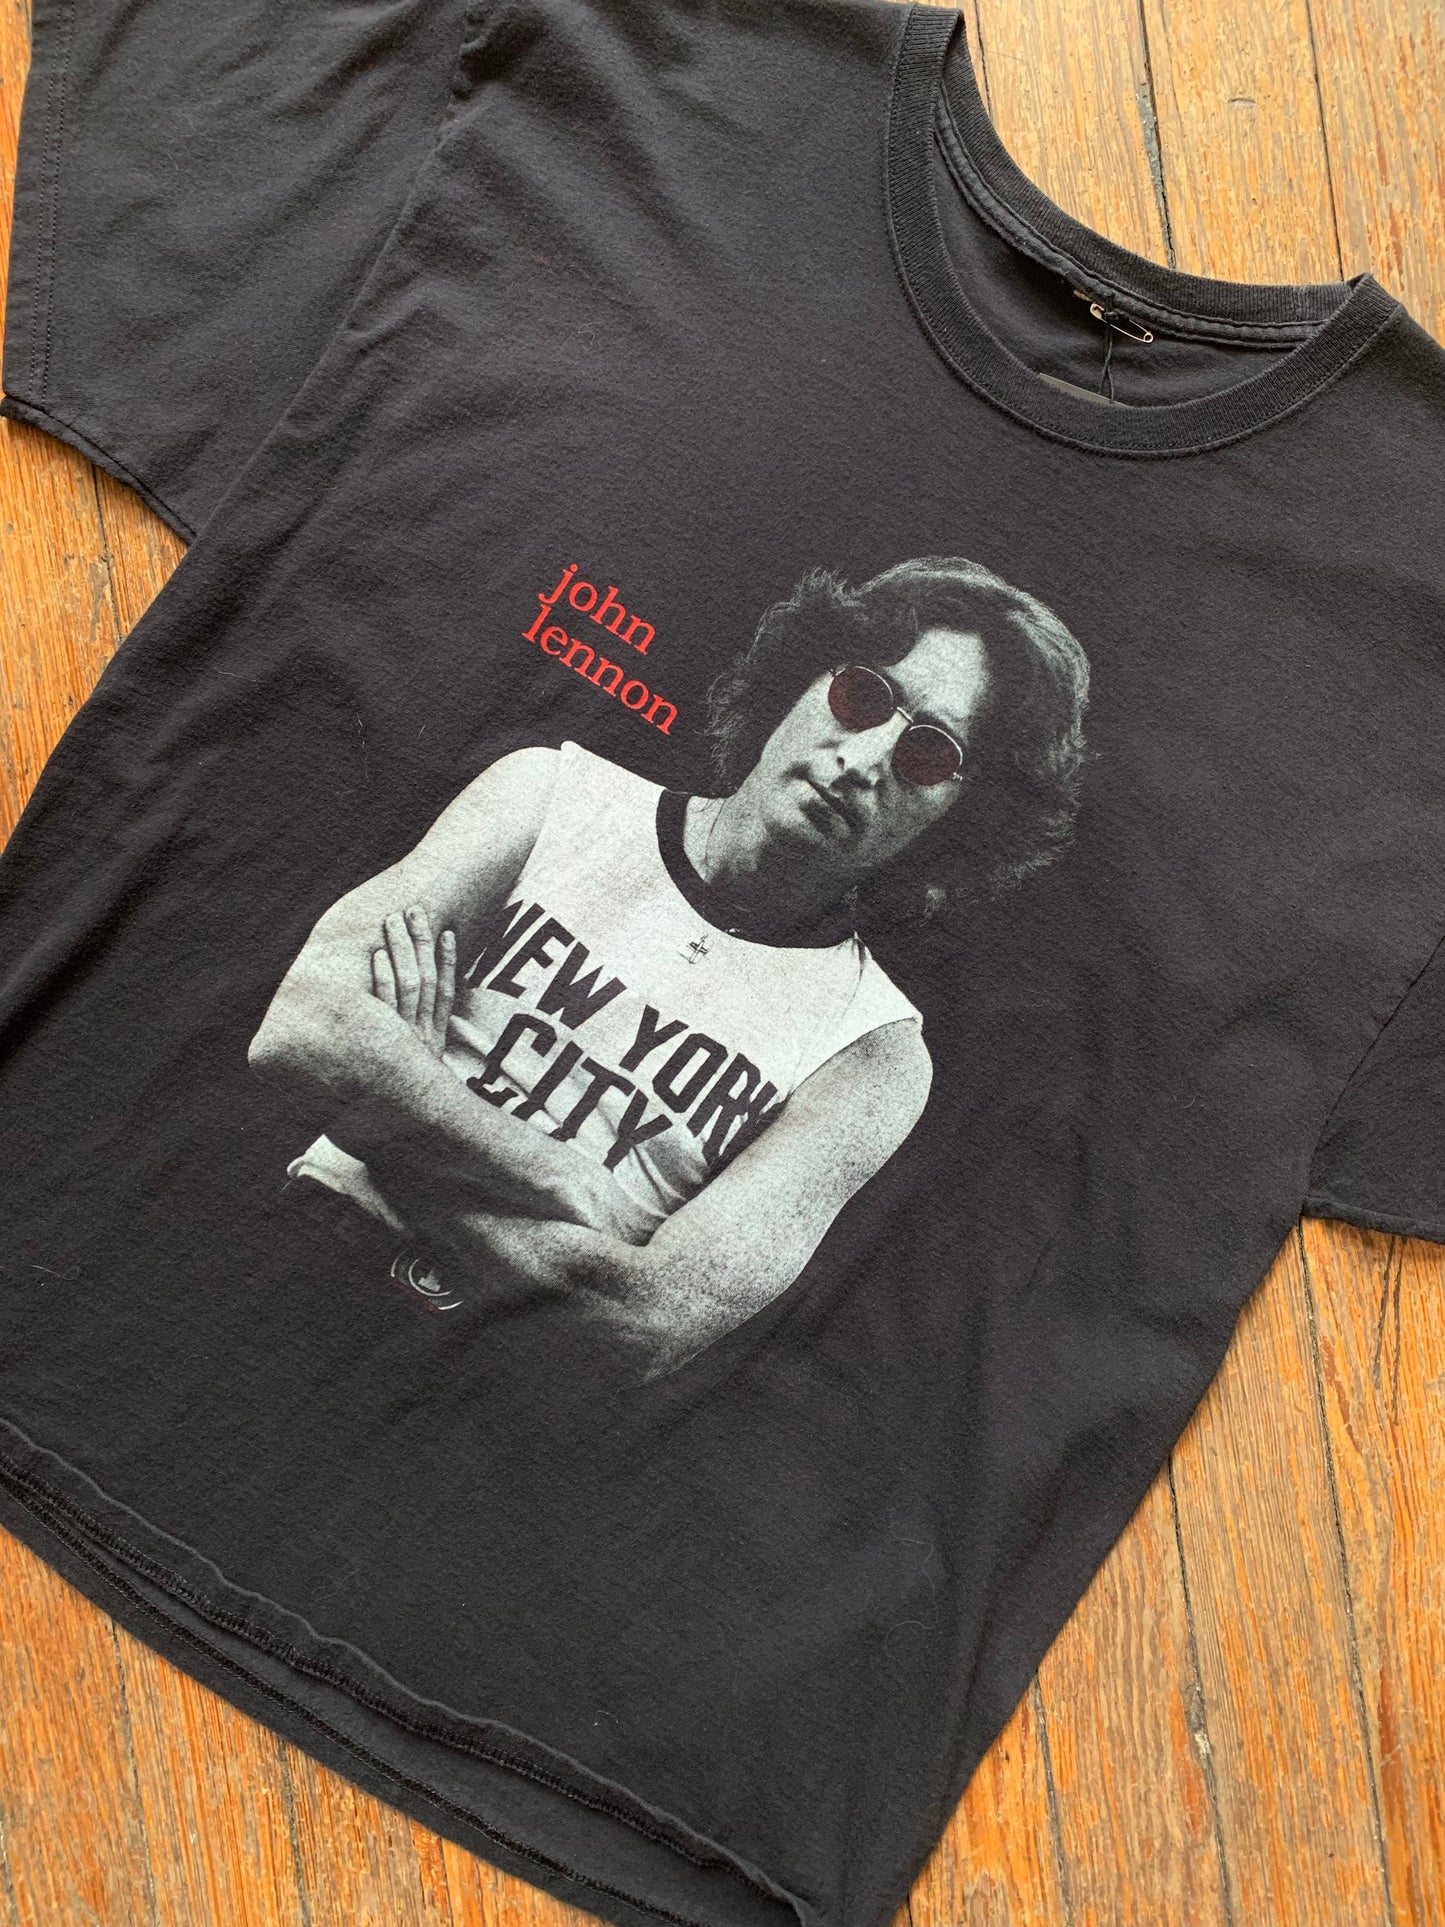 Vintage John Lennon New York T-Shirt